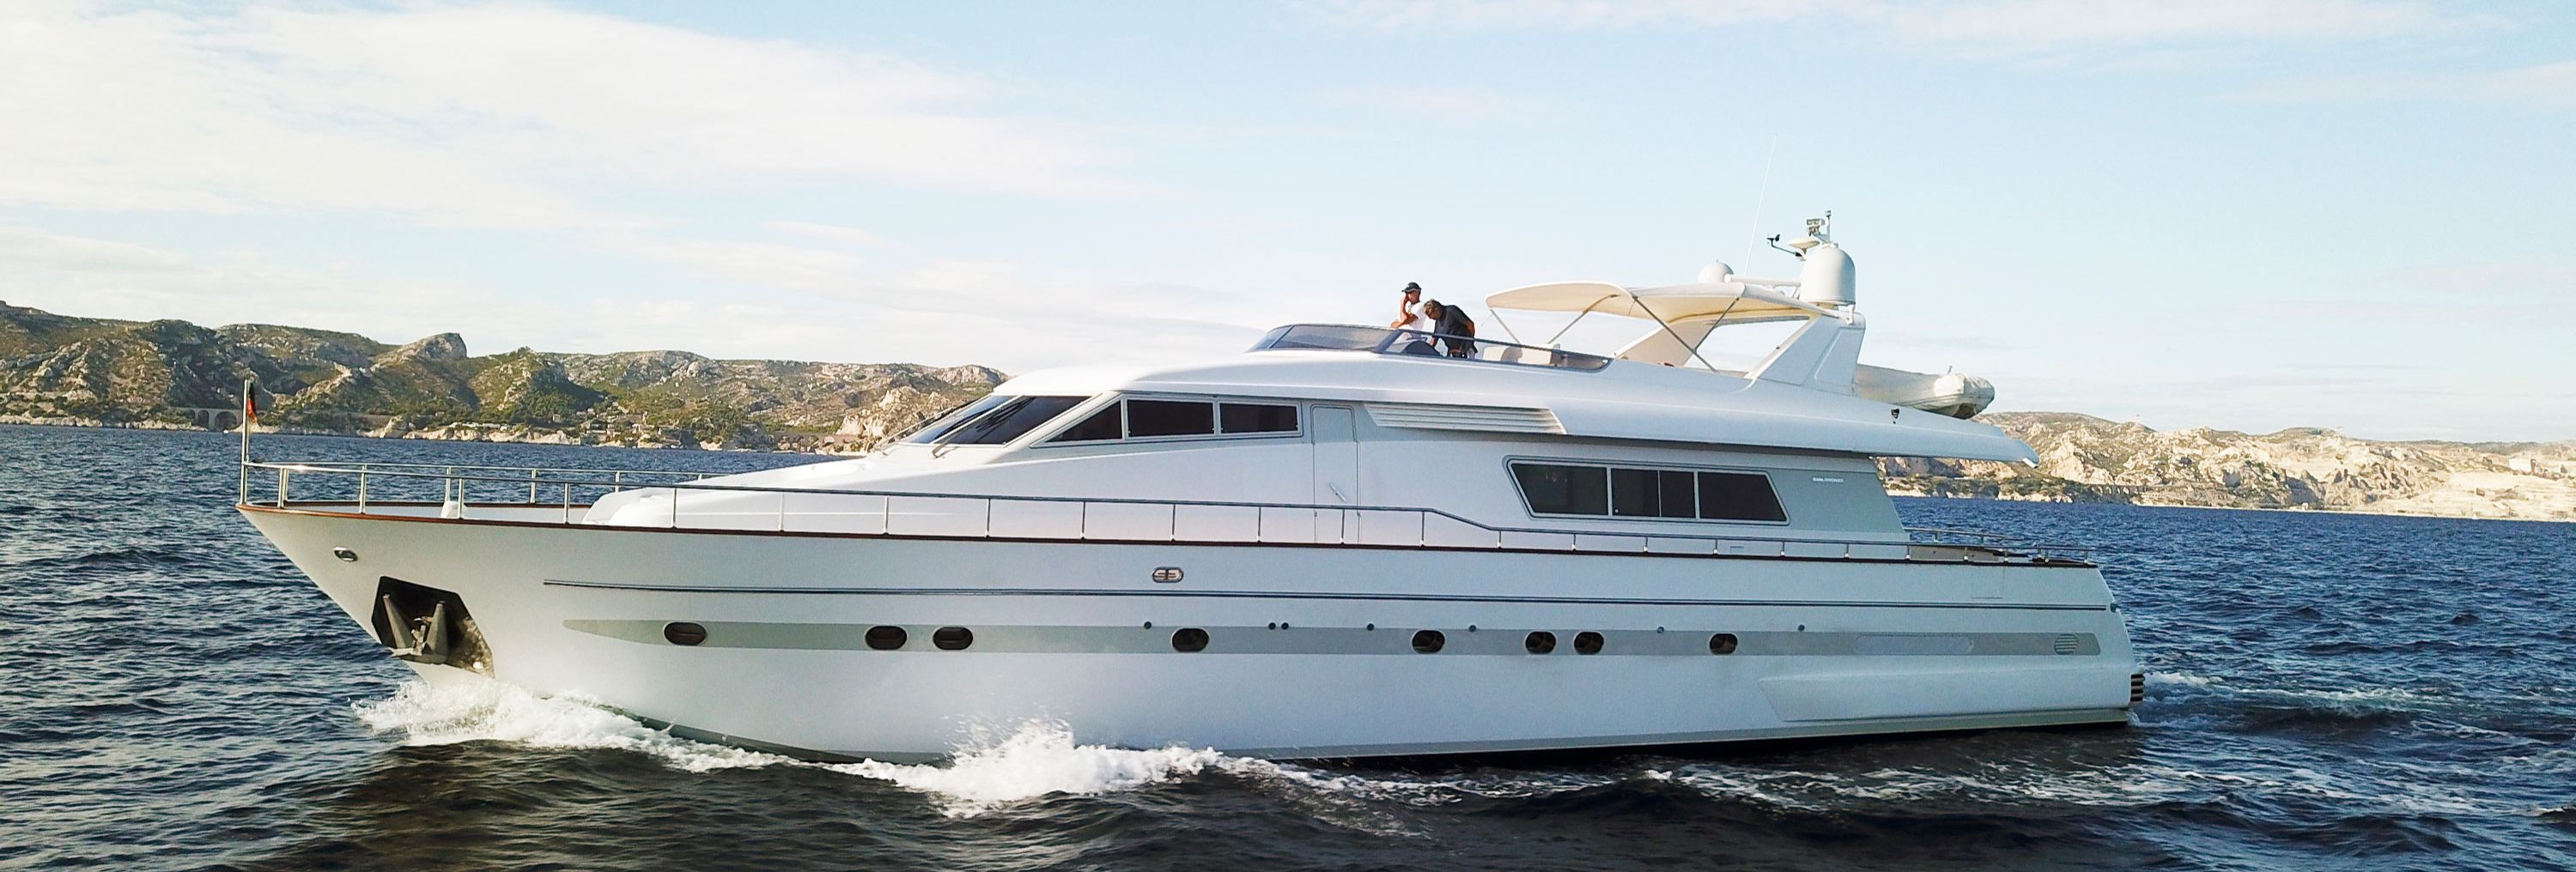 Louez le yacht OLA en Corse ou sur la Côte d'Azur cet été